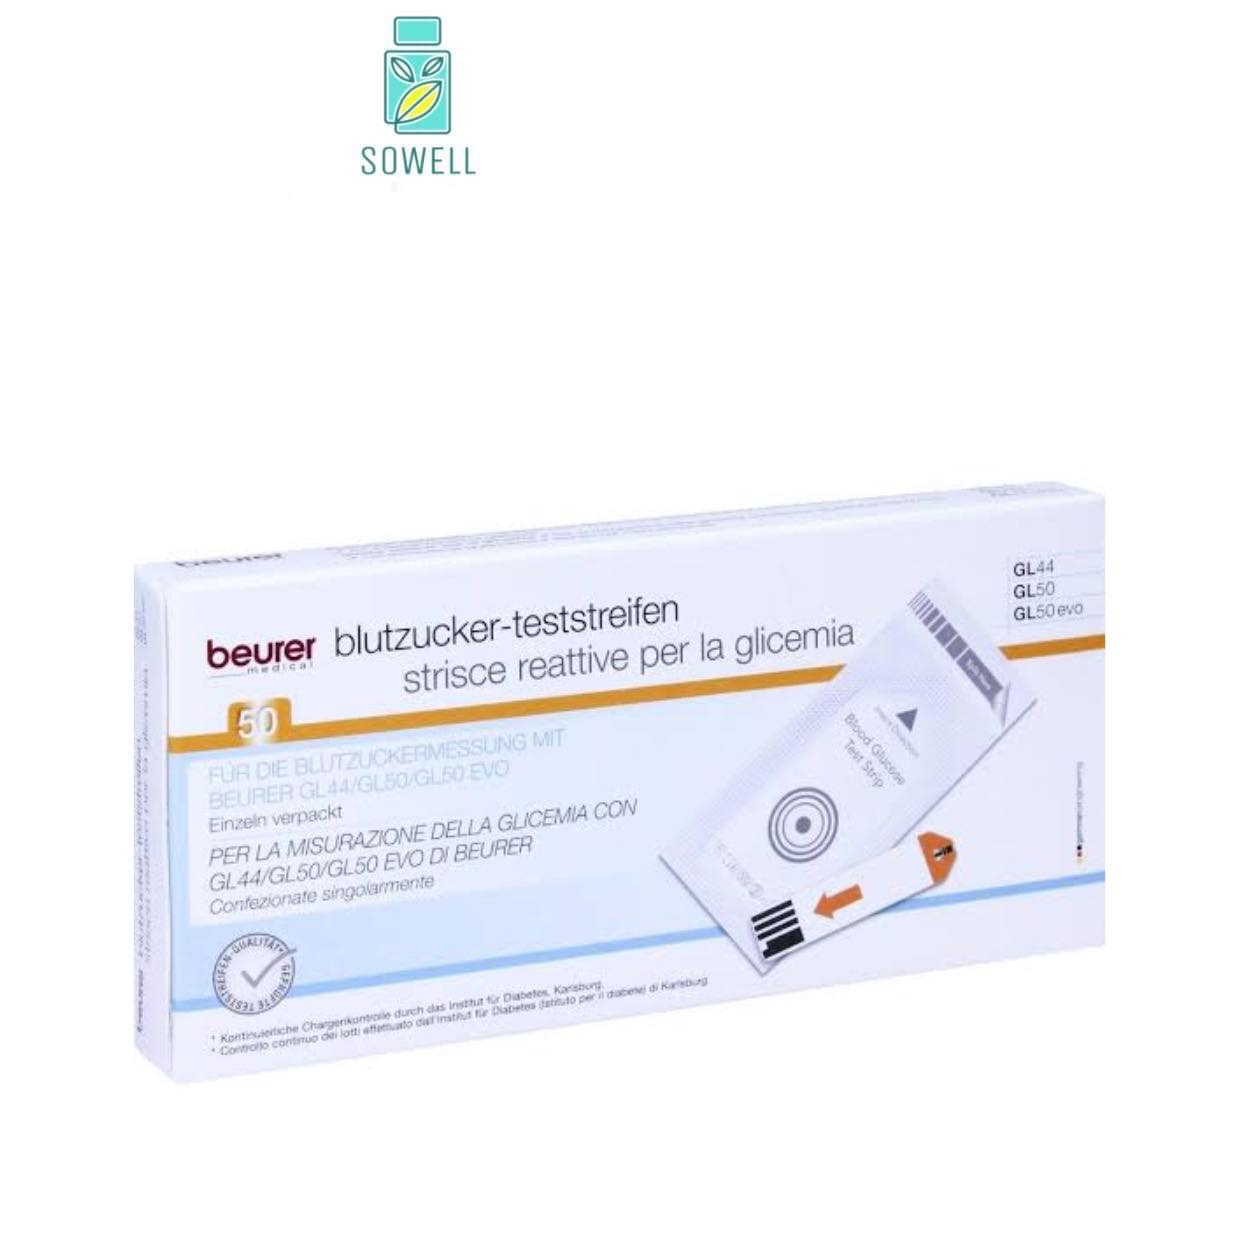 BEURER แถบวัดระดับน้ำตาลในเลือด สำหรับเครื่องวัดน้ำตาล Beurer Gl44